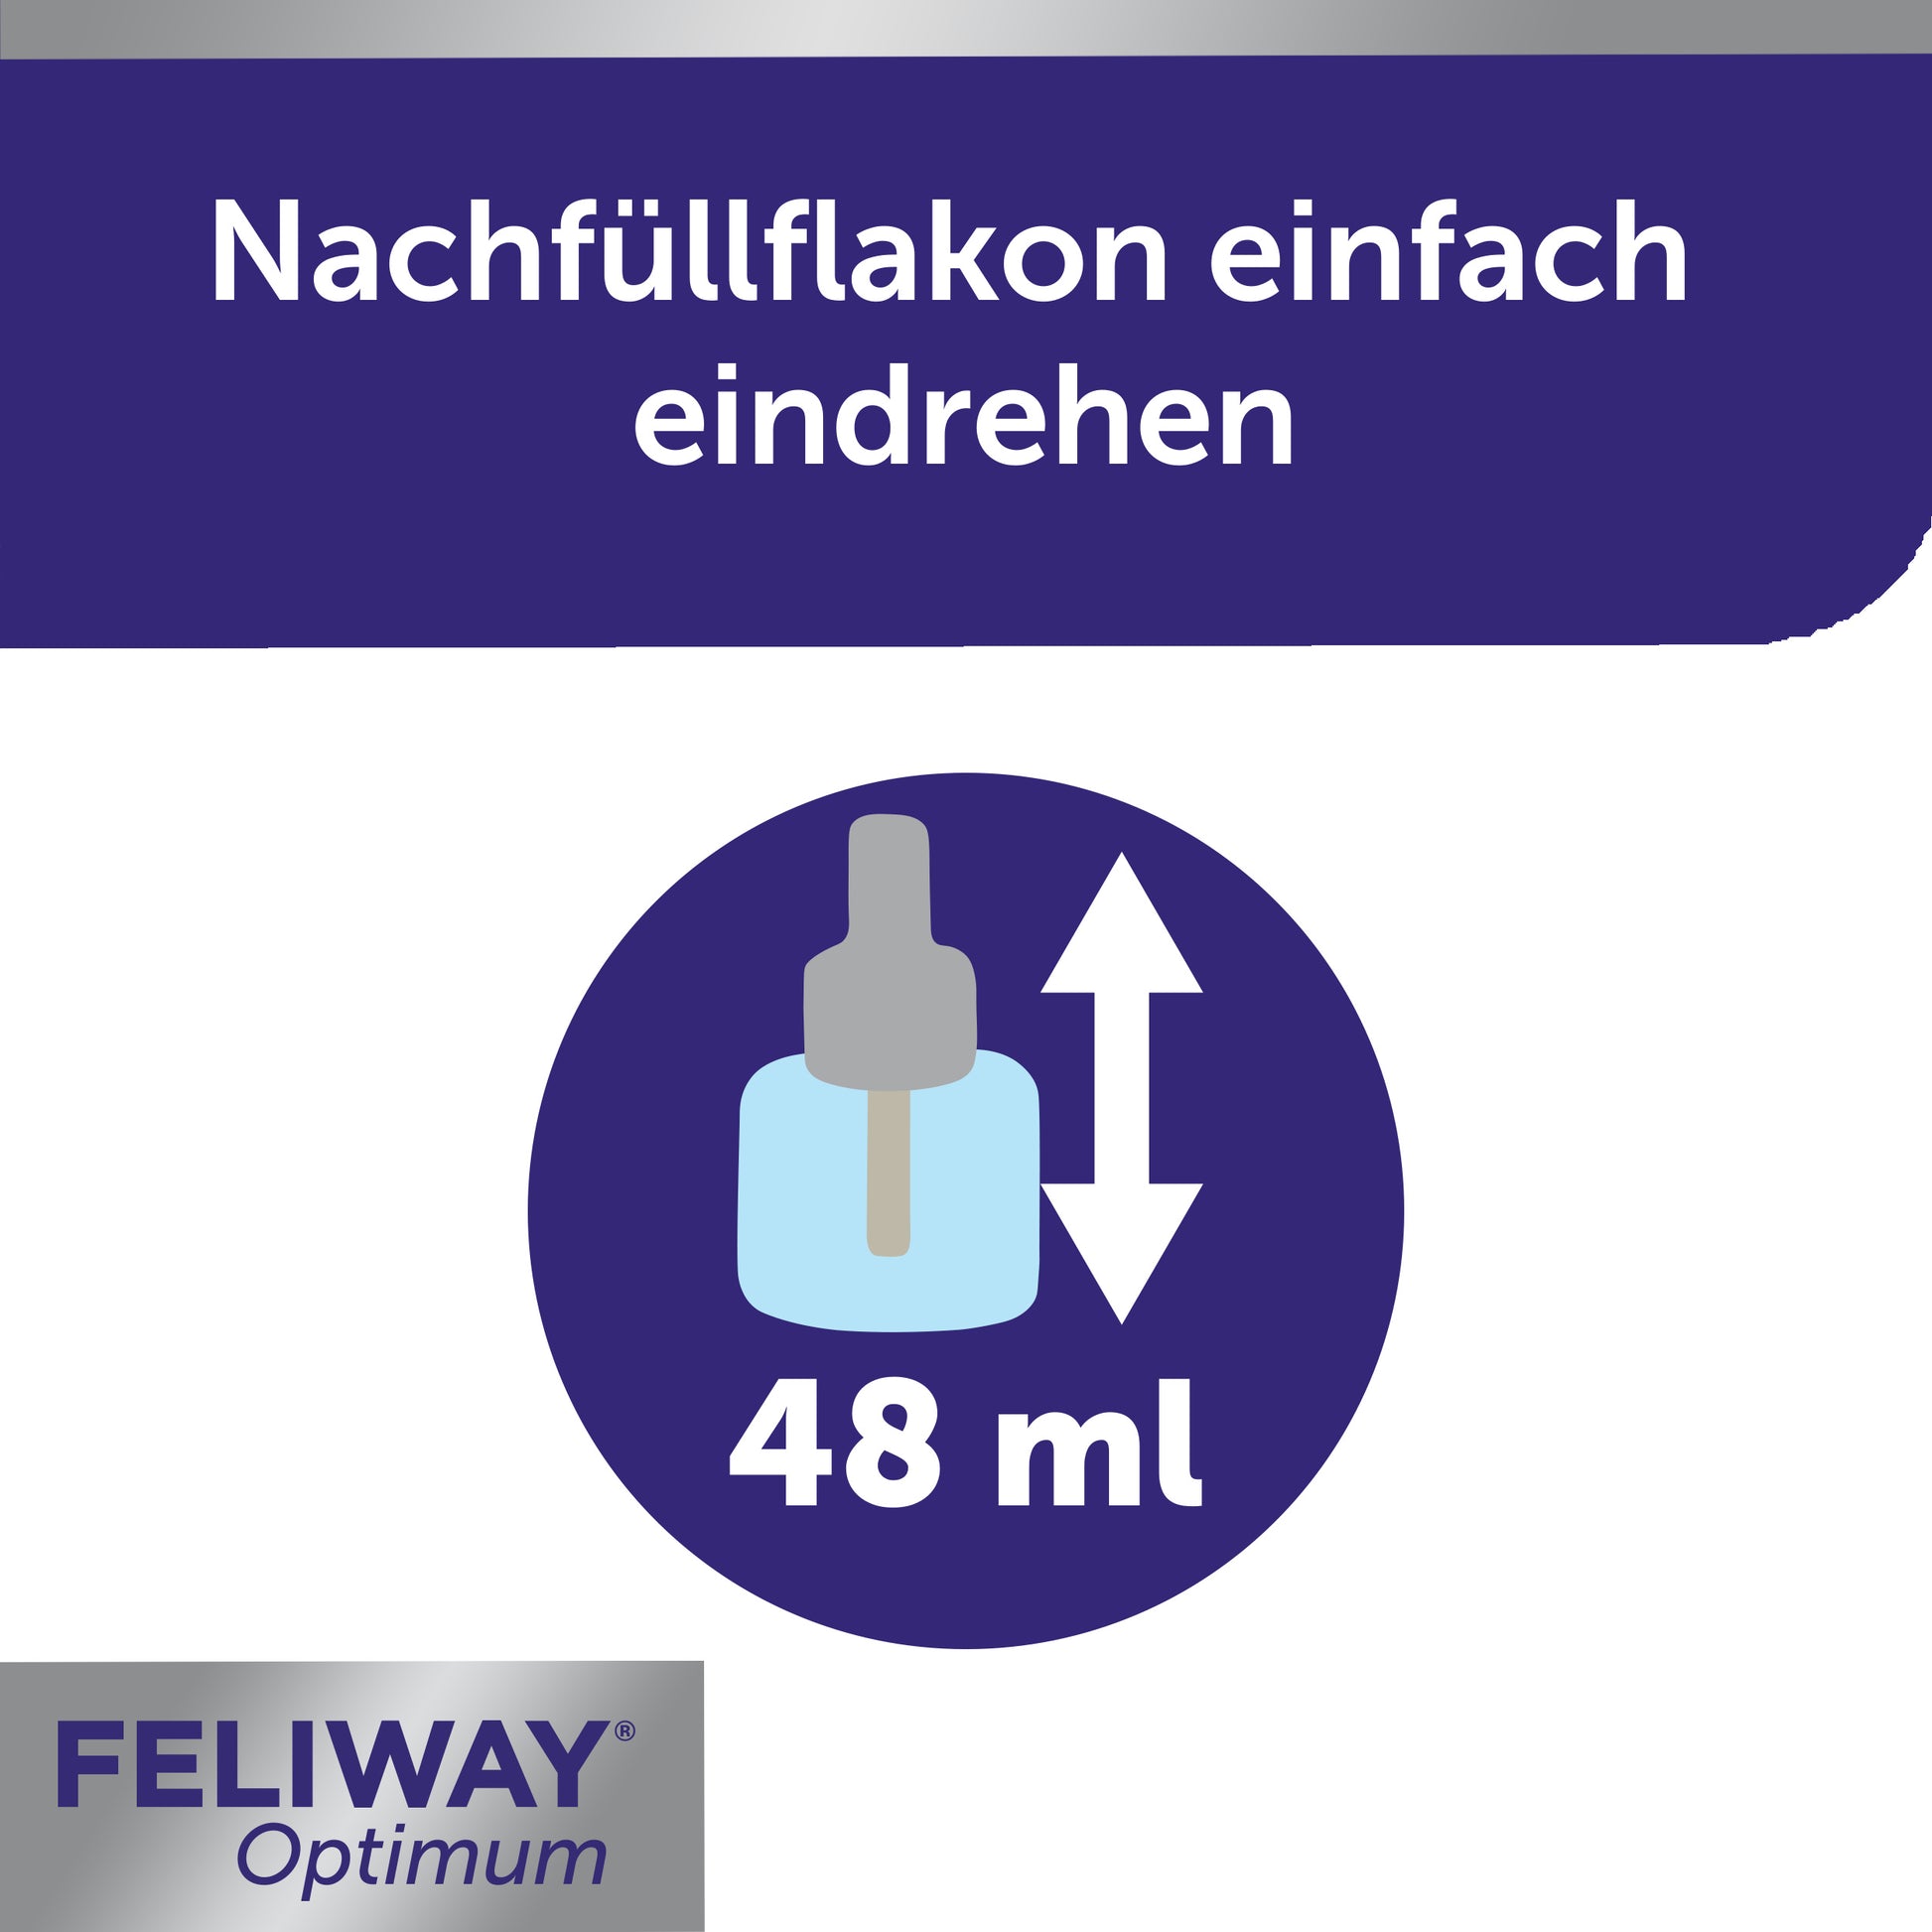 FELIWAY Optimum Flakon enthält 48 ml